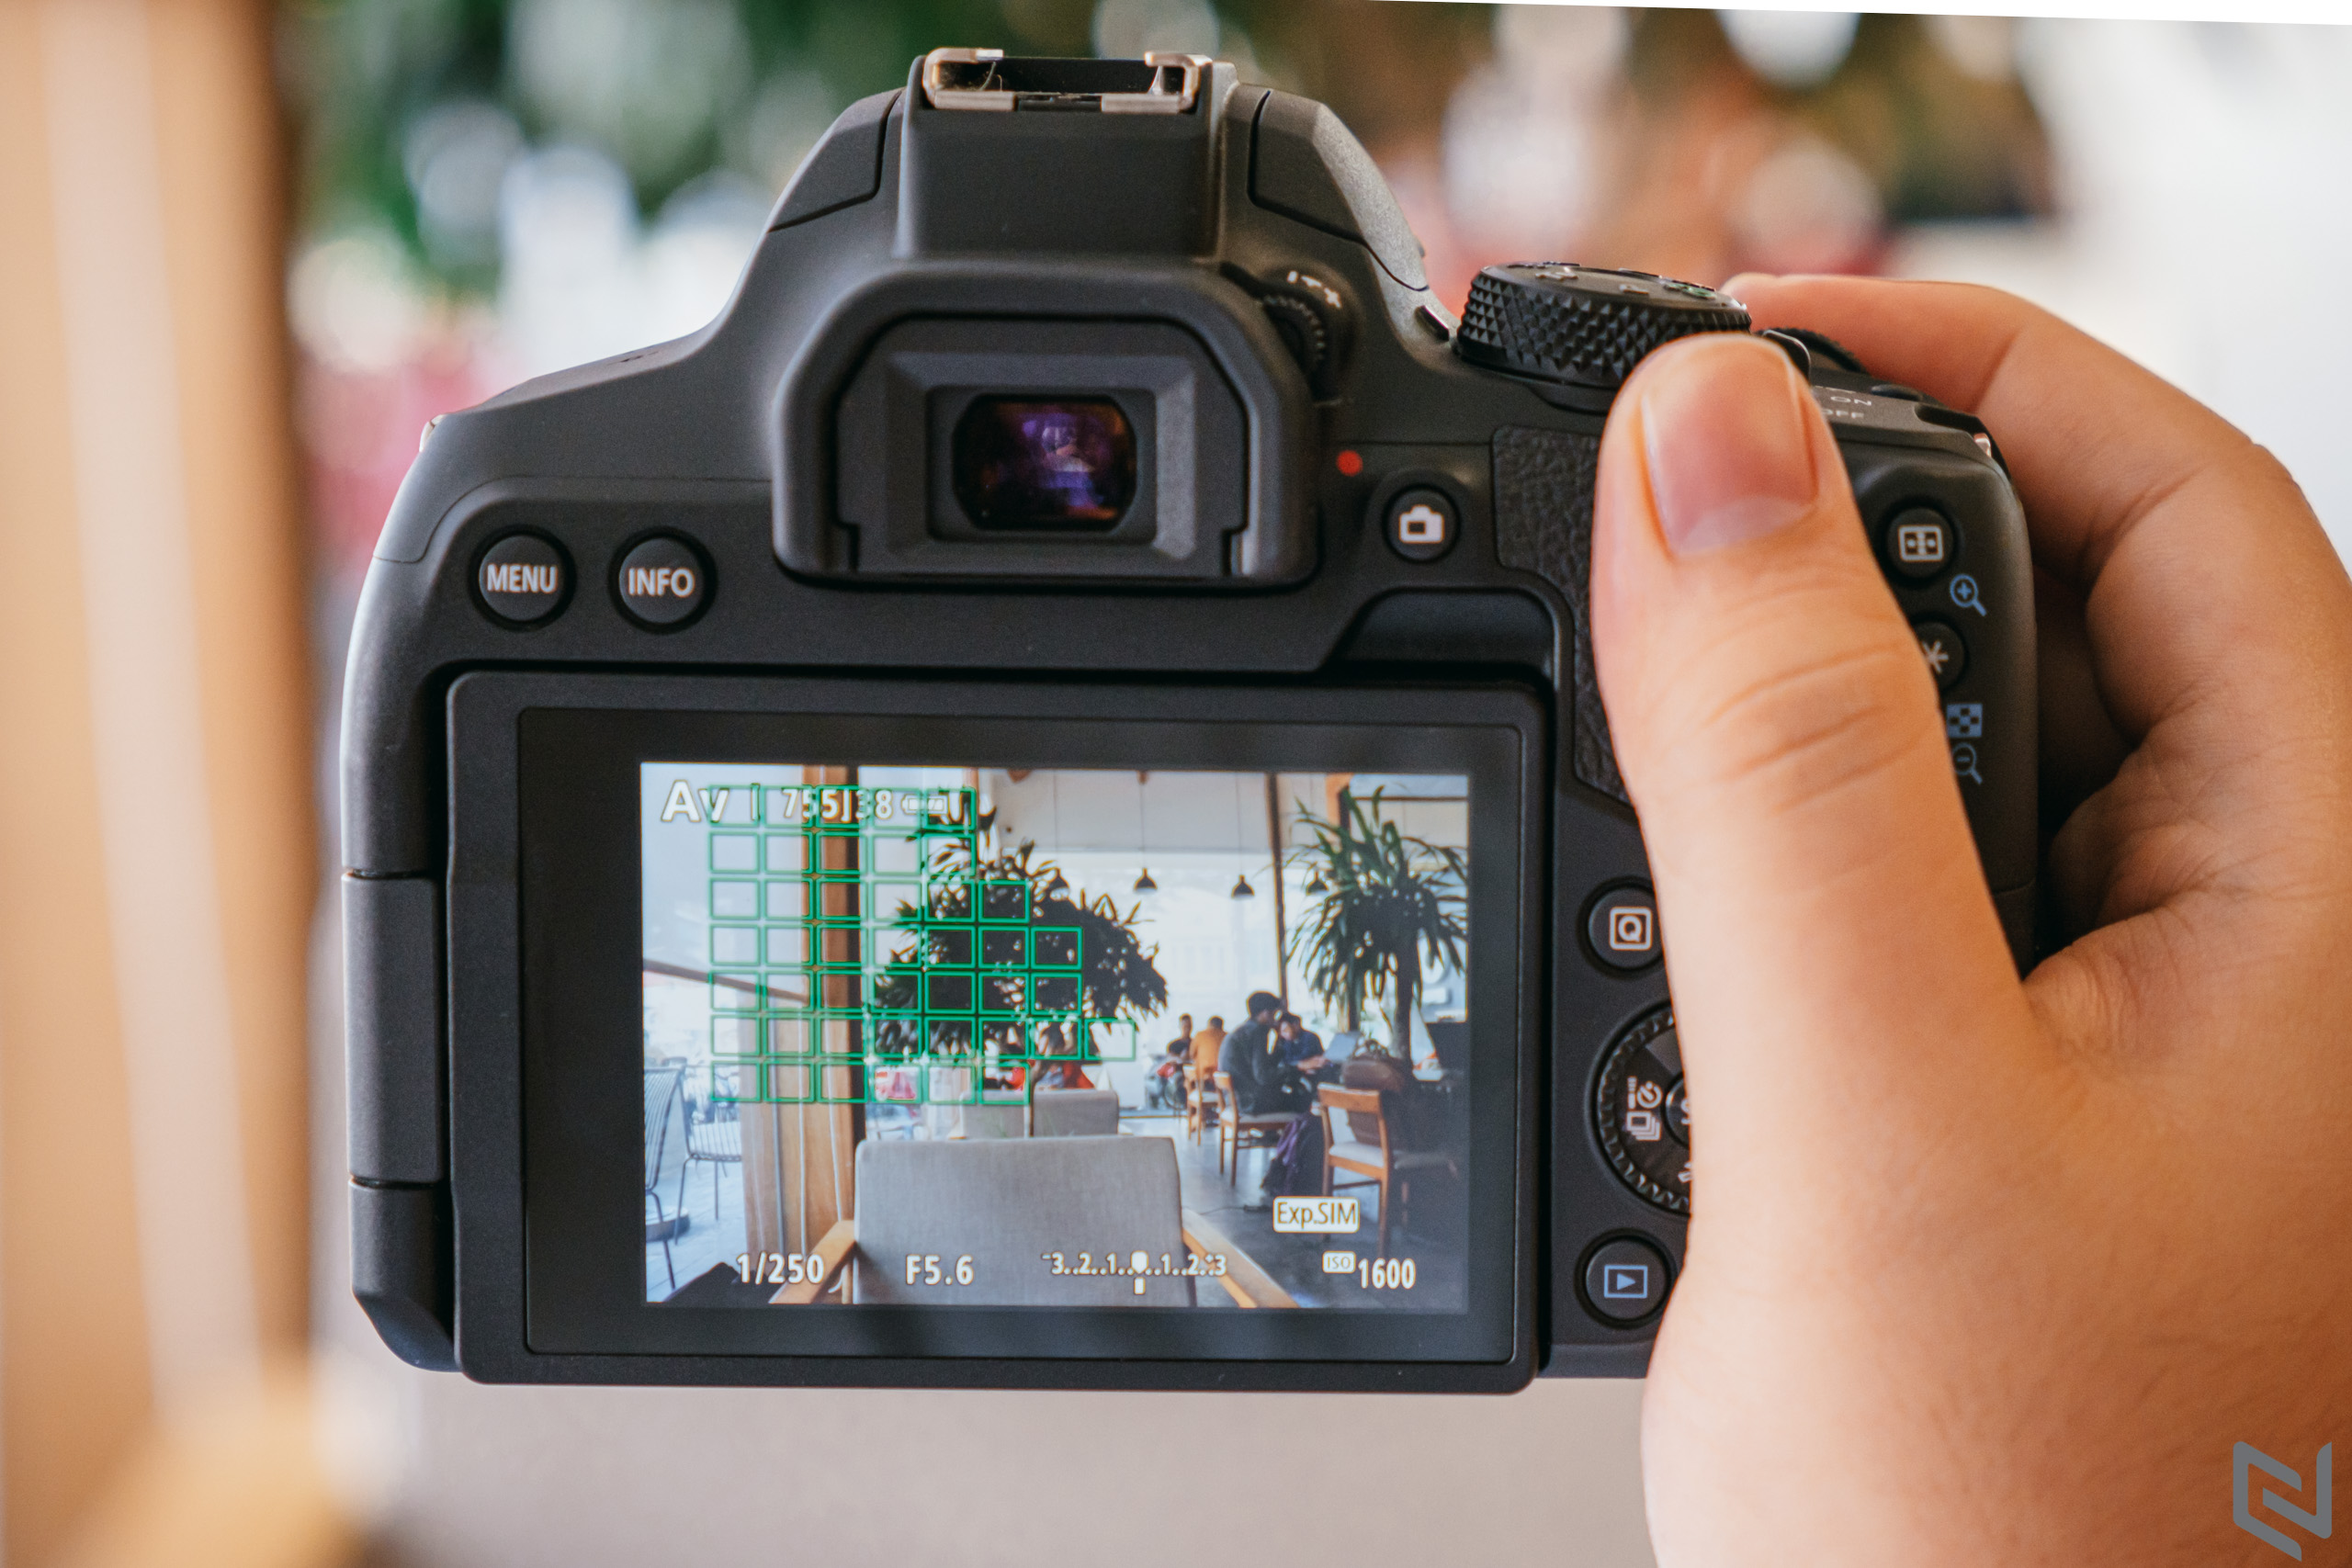 Trên tay Canon EOS 850D, chiếc DSLR hiếm hoi hiện tại dành cho người dùng nhập môn với nhiều tính năng cao cấp từ dòng EOS R